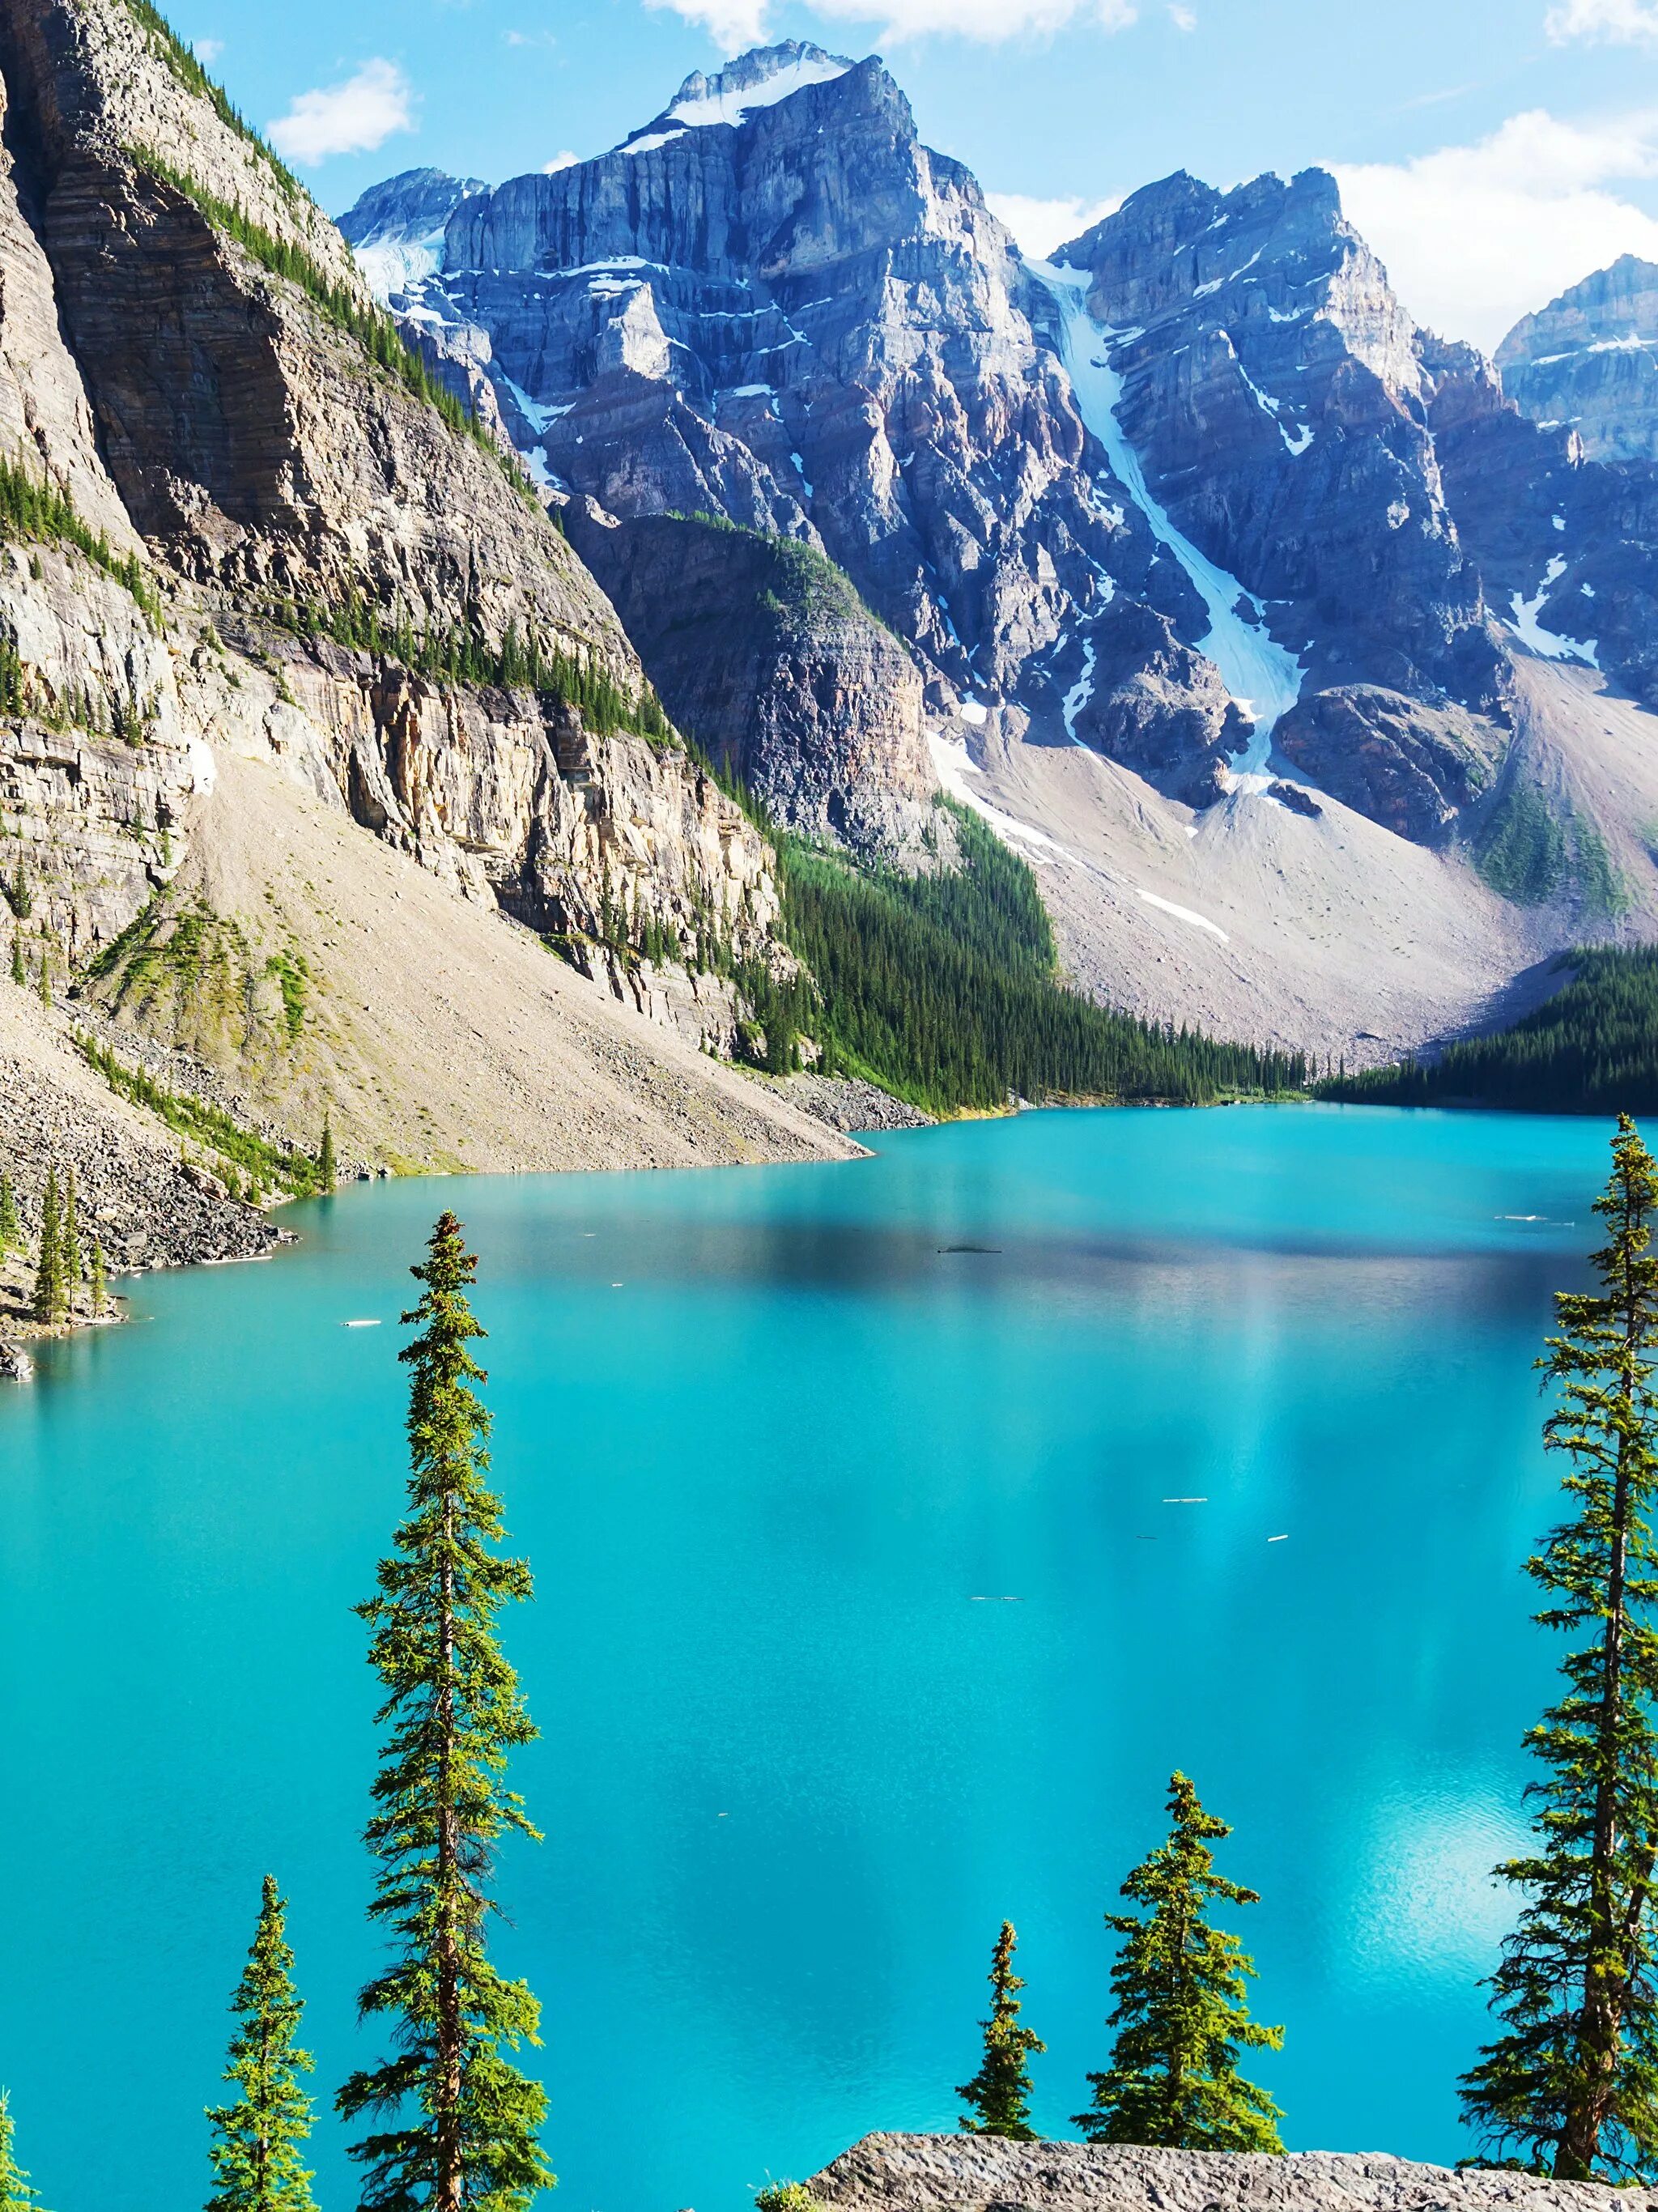 Заставка на телефон природа вертикально. Озеро Морейн в Канаде. Бан акк фф. Озеро в горах.